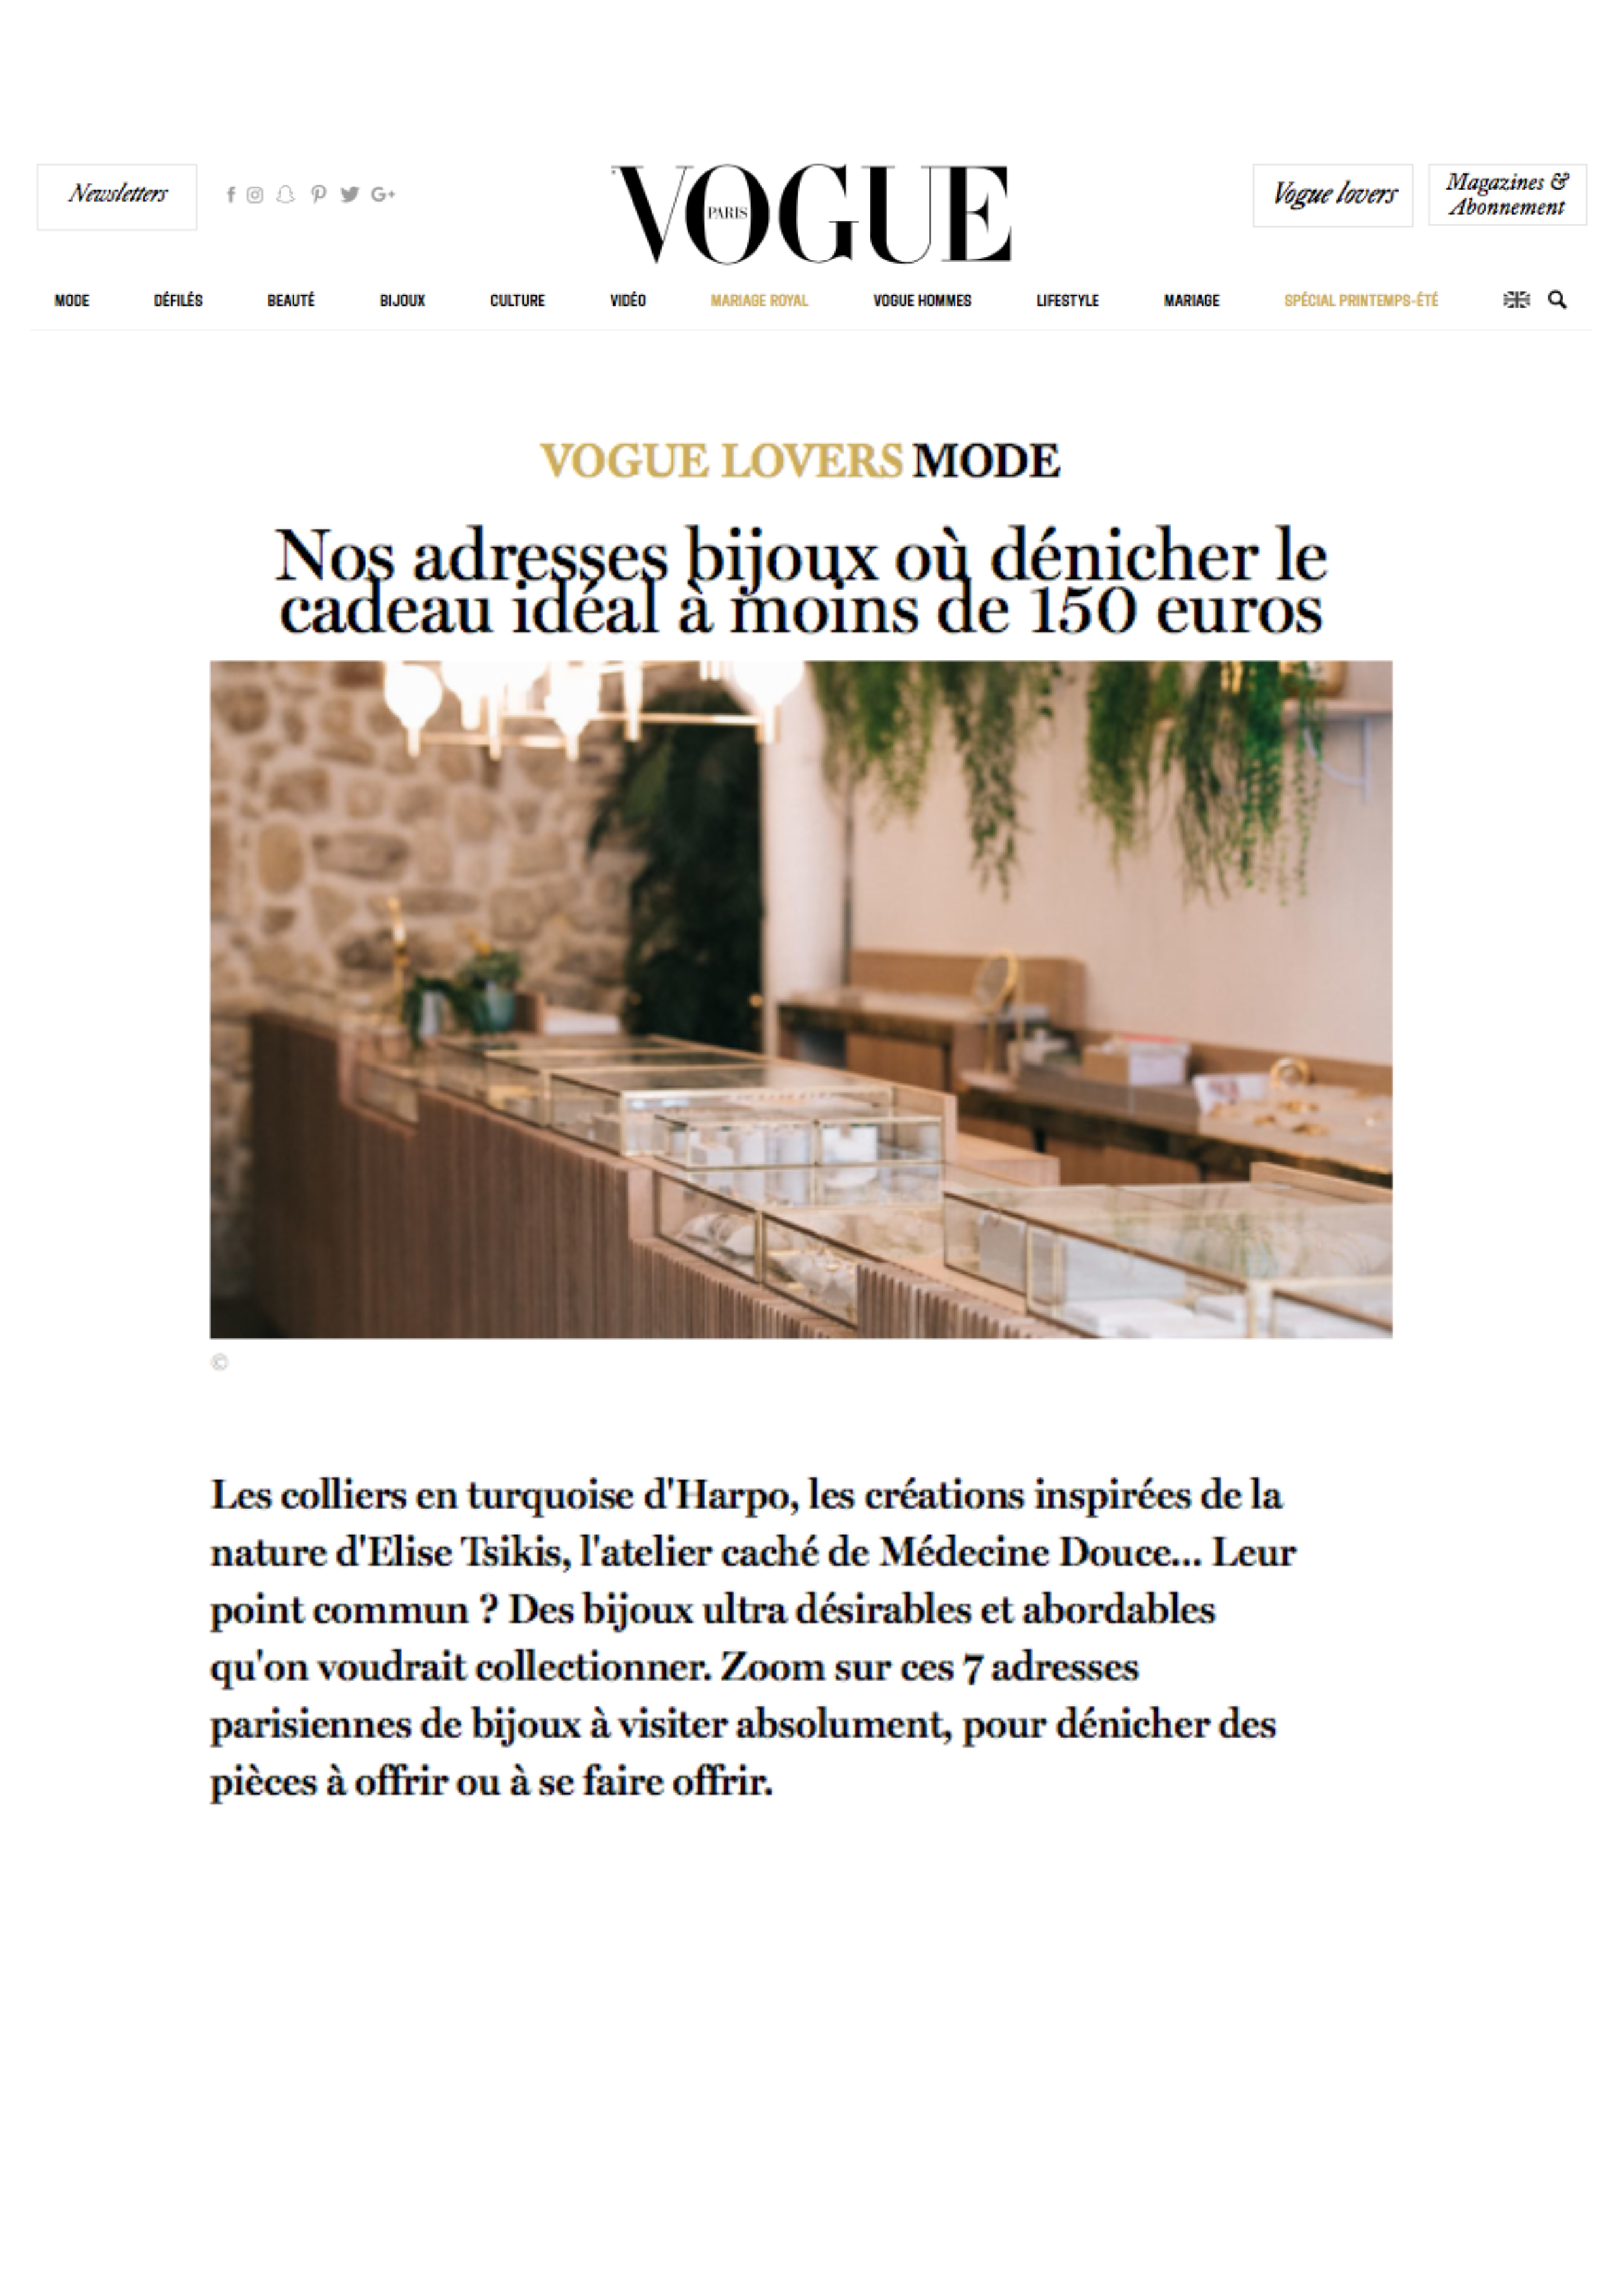 Vogue.fr - 6 Juin 2018 - Concerto N°1 -1.jpg